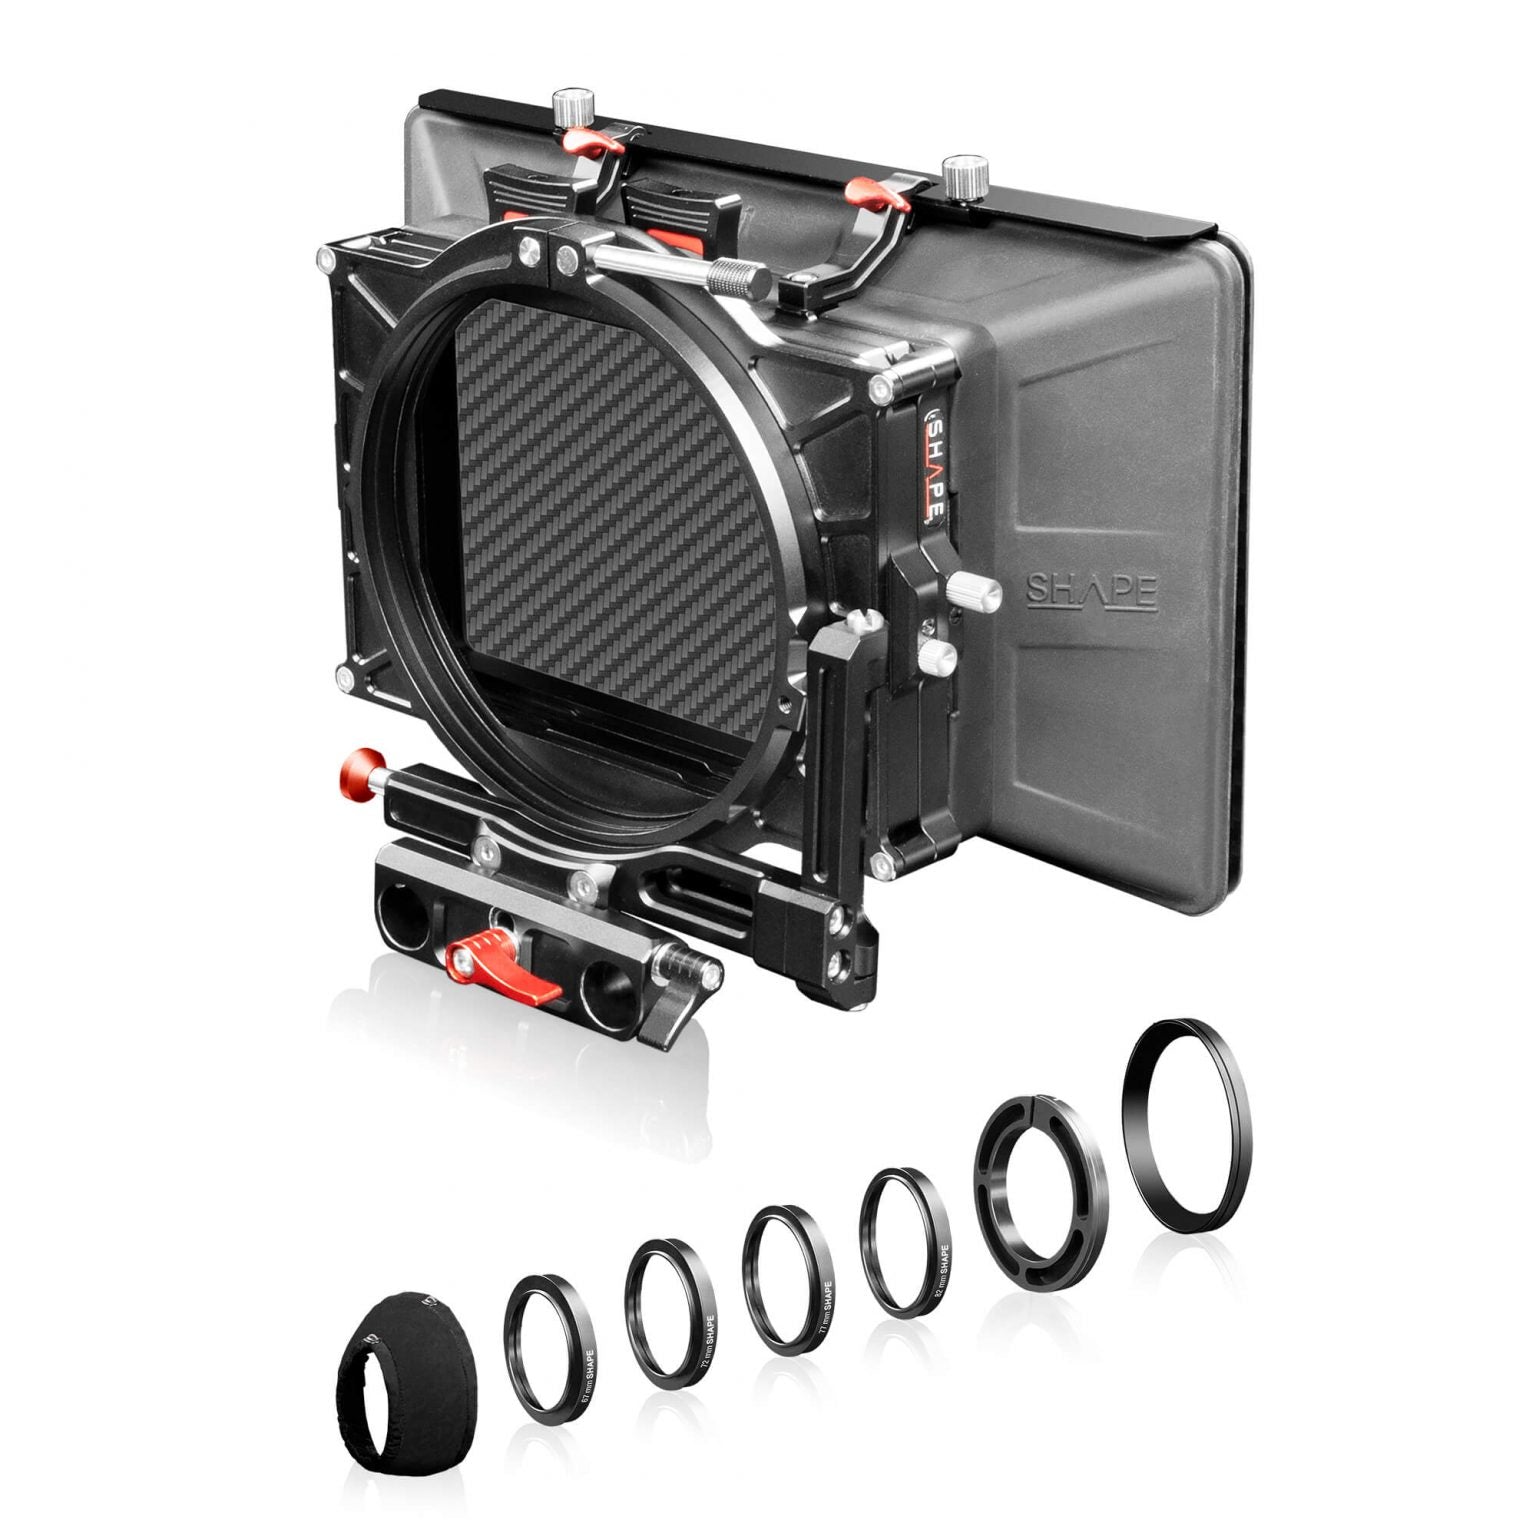 SHAPE Camera Bundle Rig Kit for Blackmagic Ursa Mini